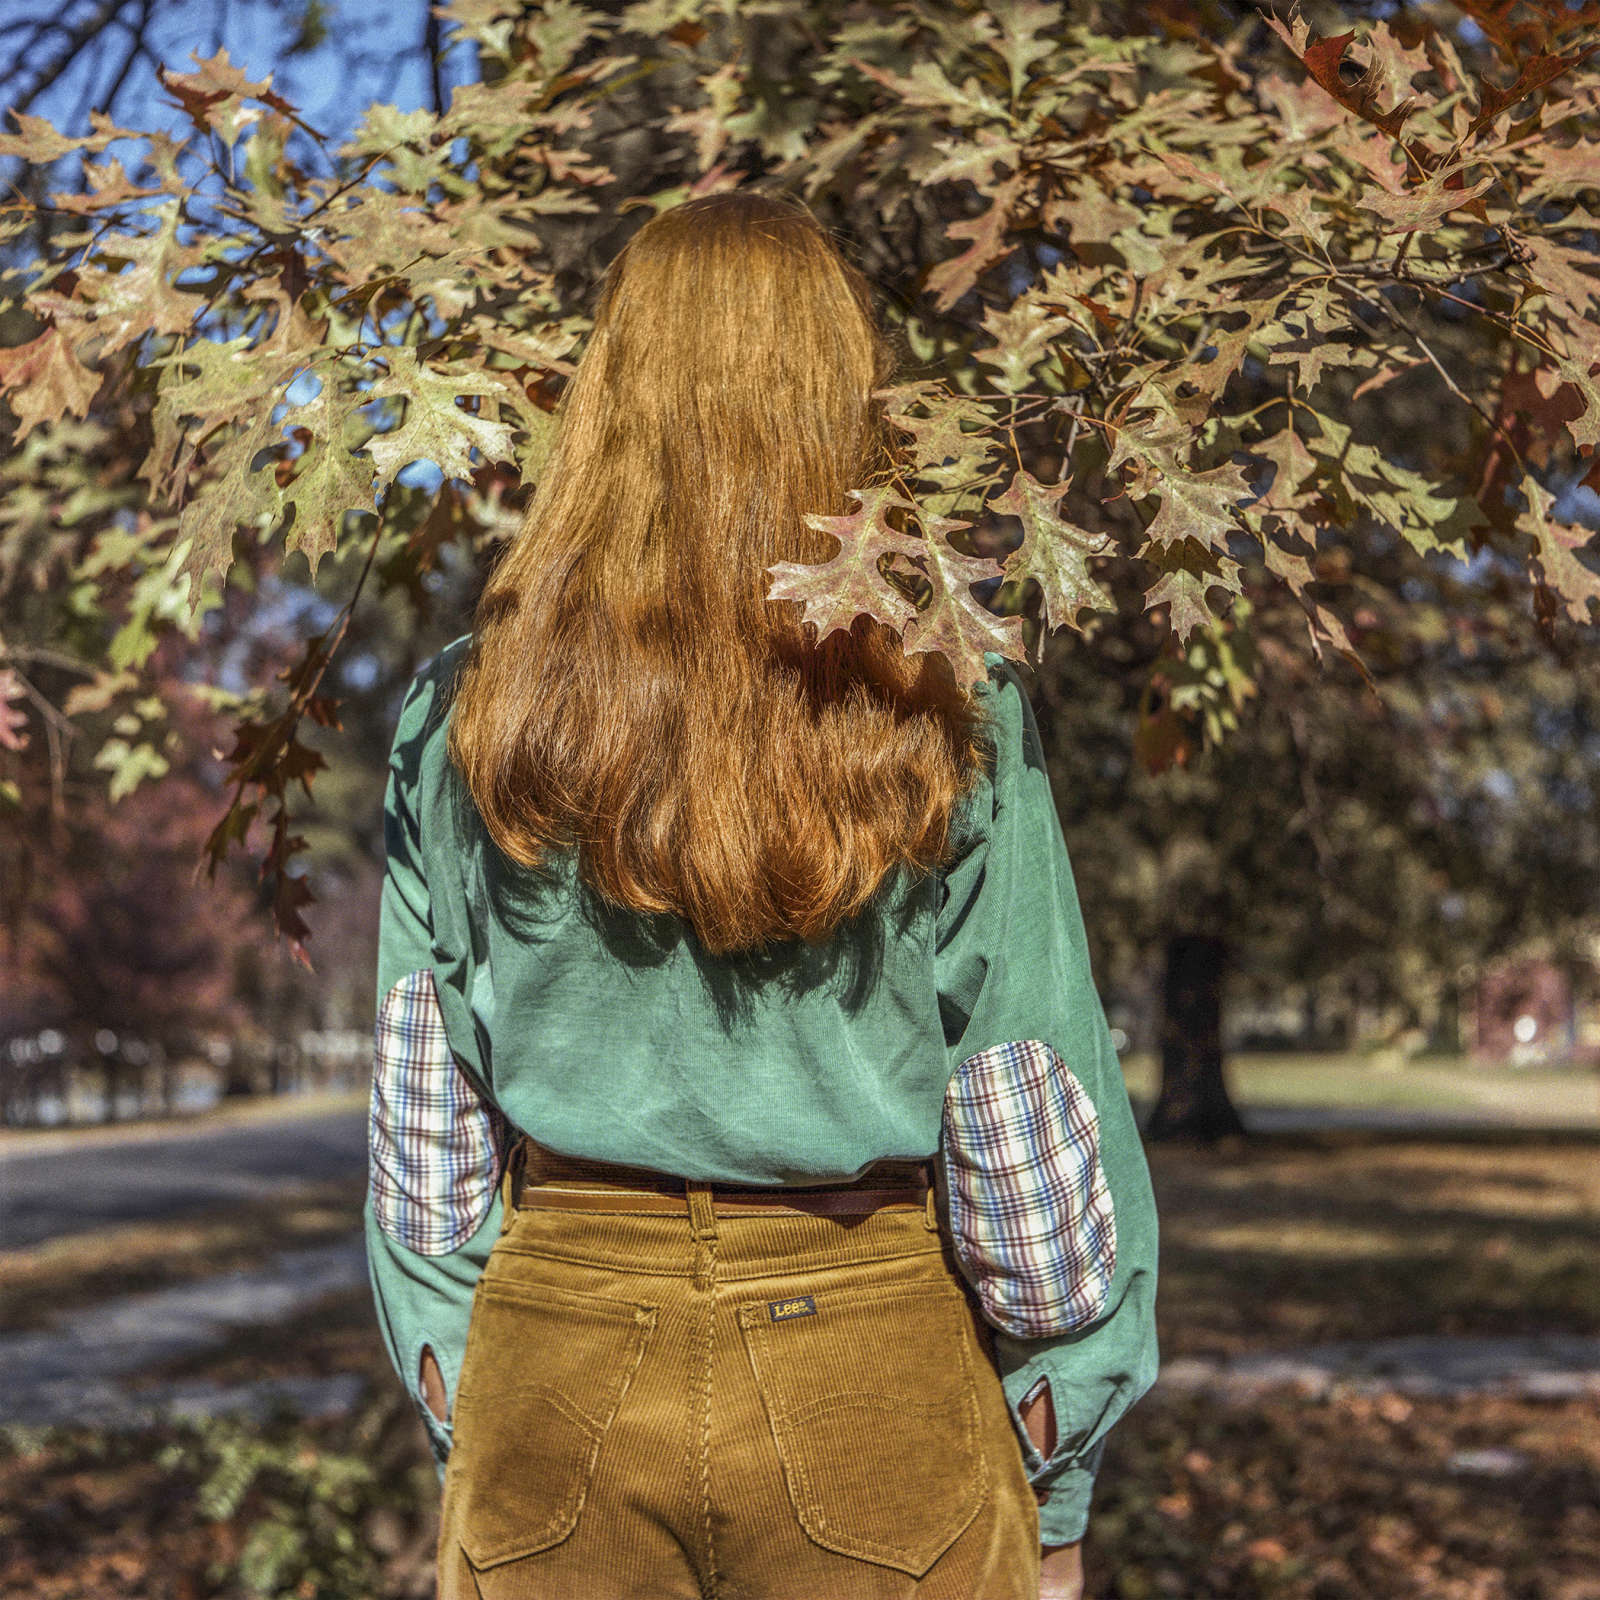 Bonnie Claire, Autumn Leaves, 1983